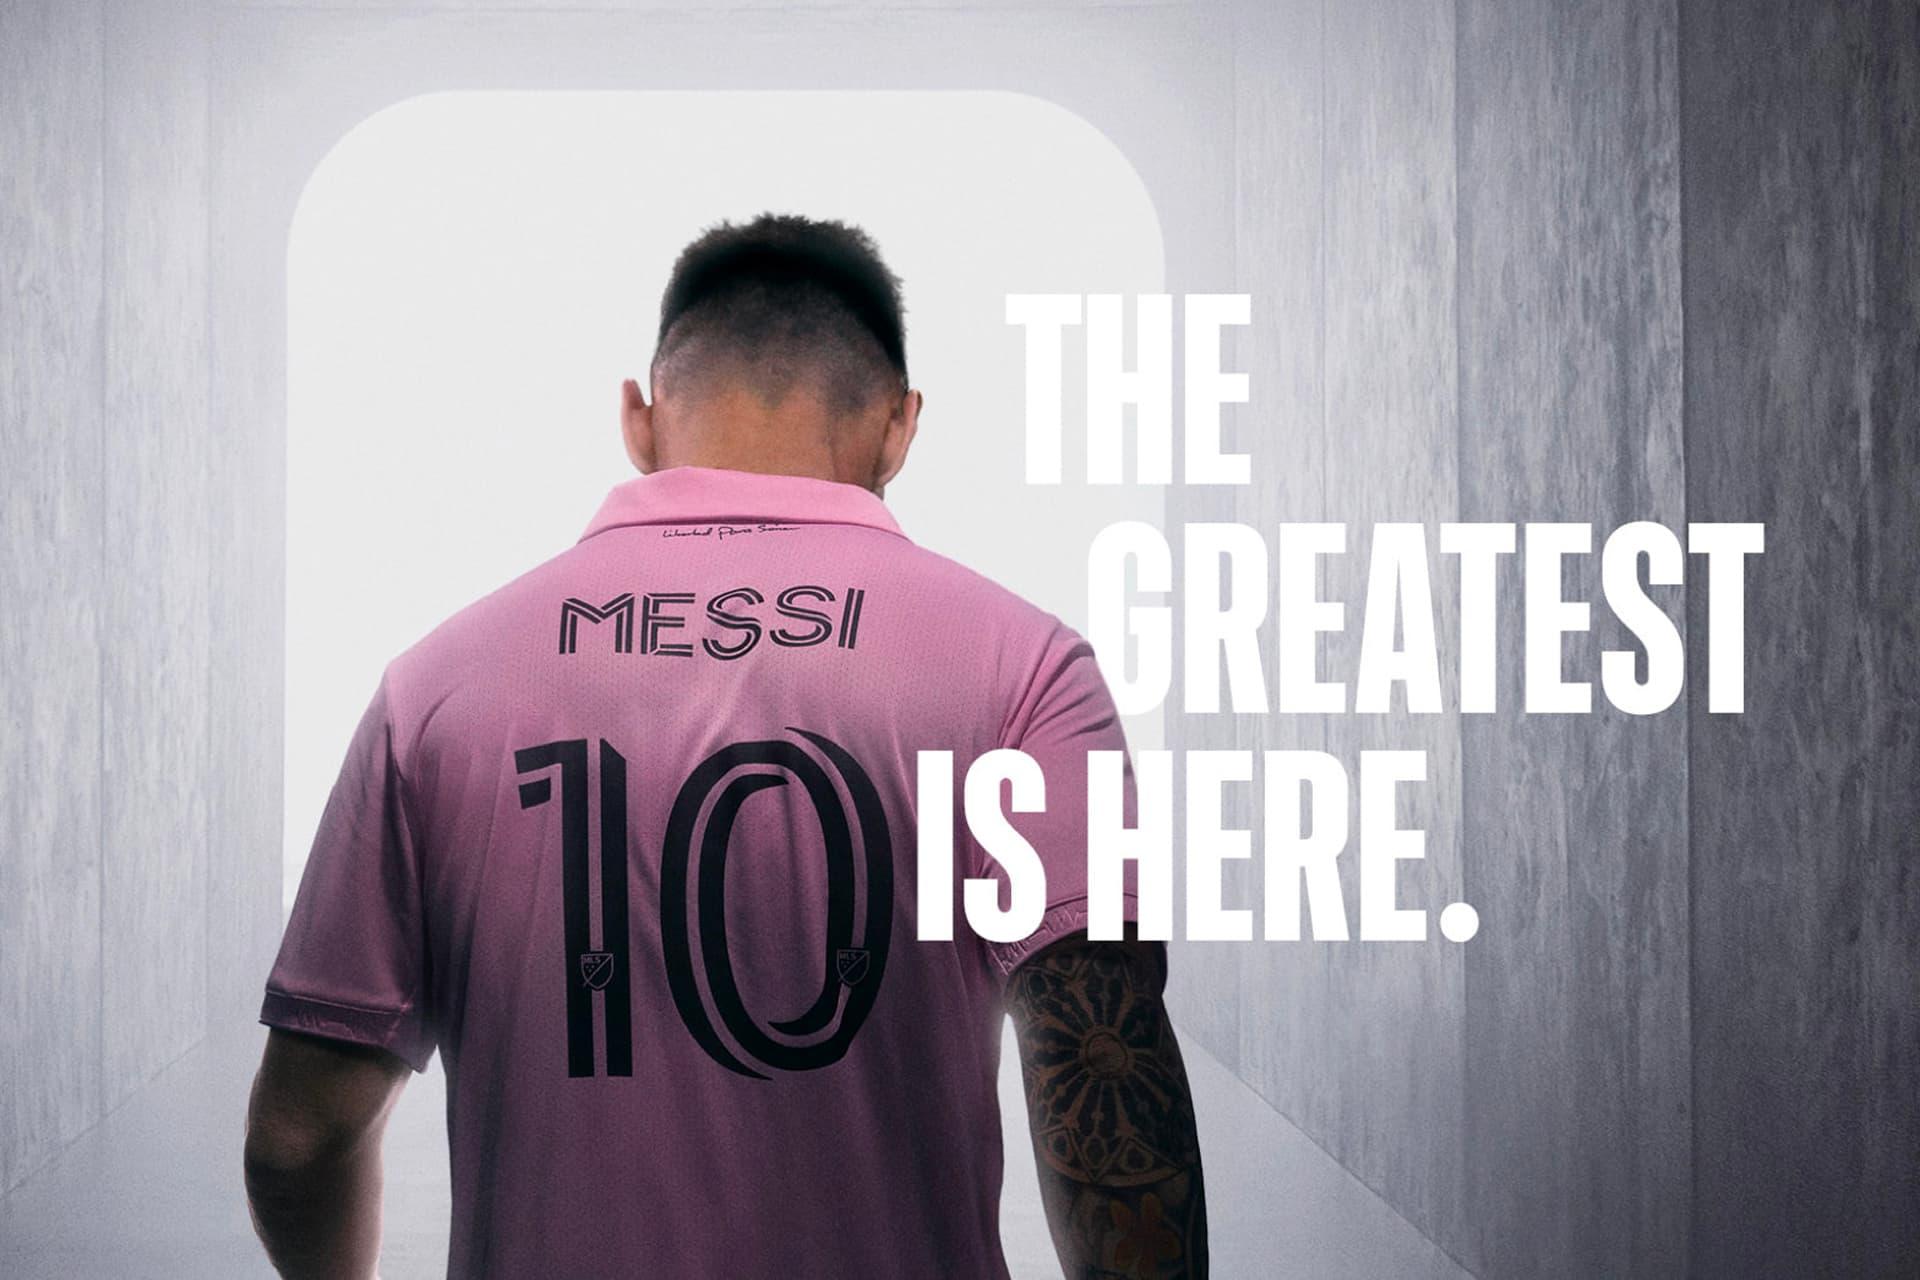 لیونل مسی / Lionel Messi با لباس صورتی تیم اینتر میامی